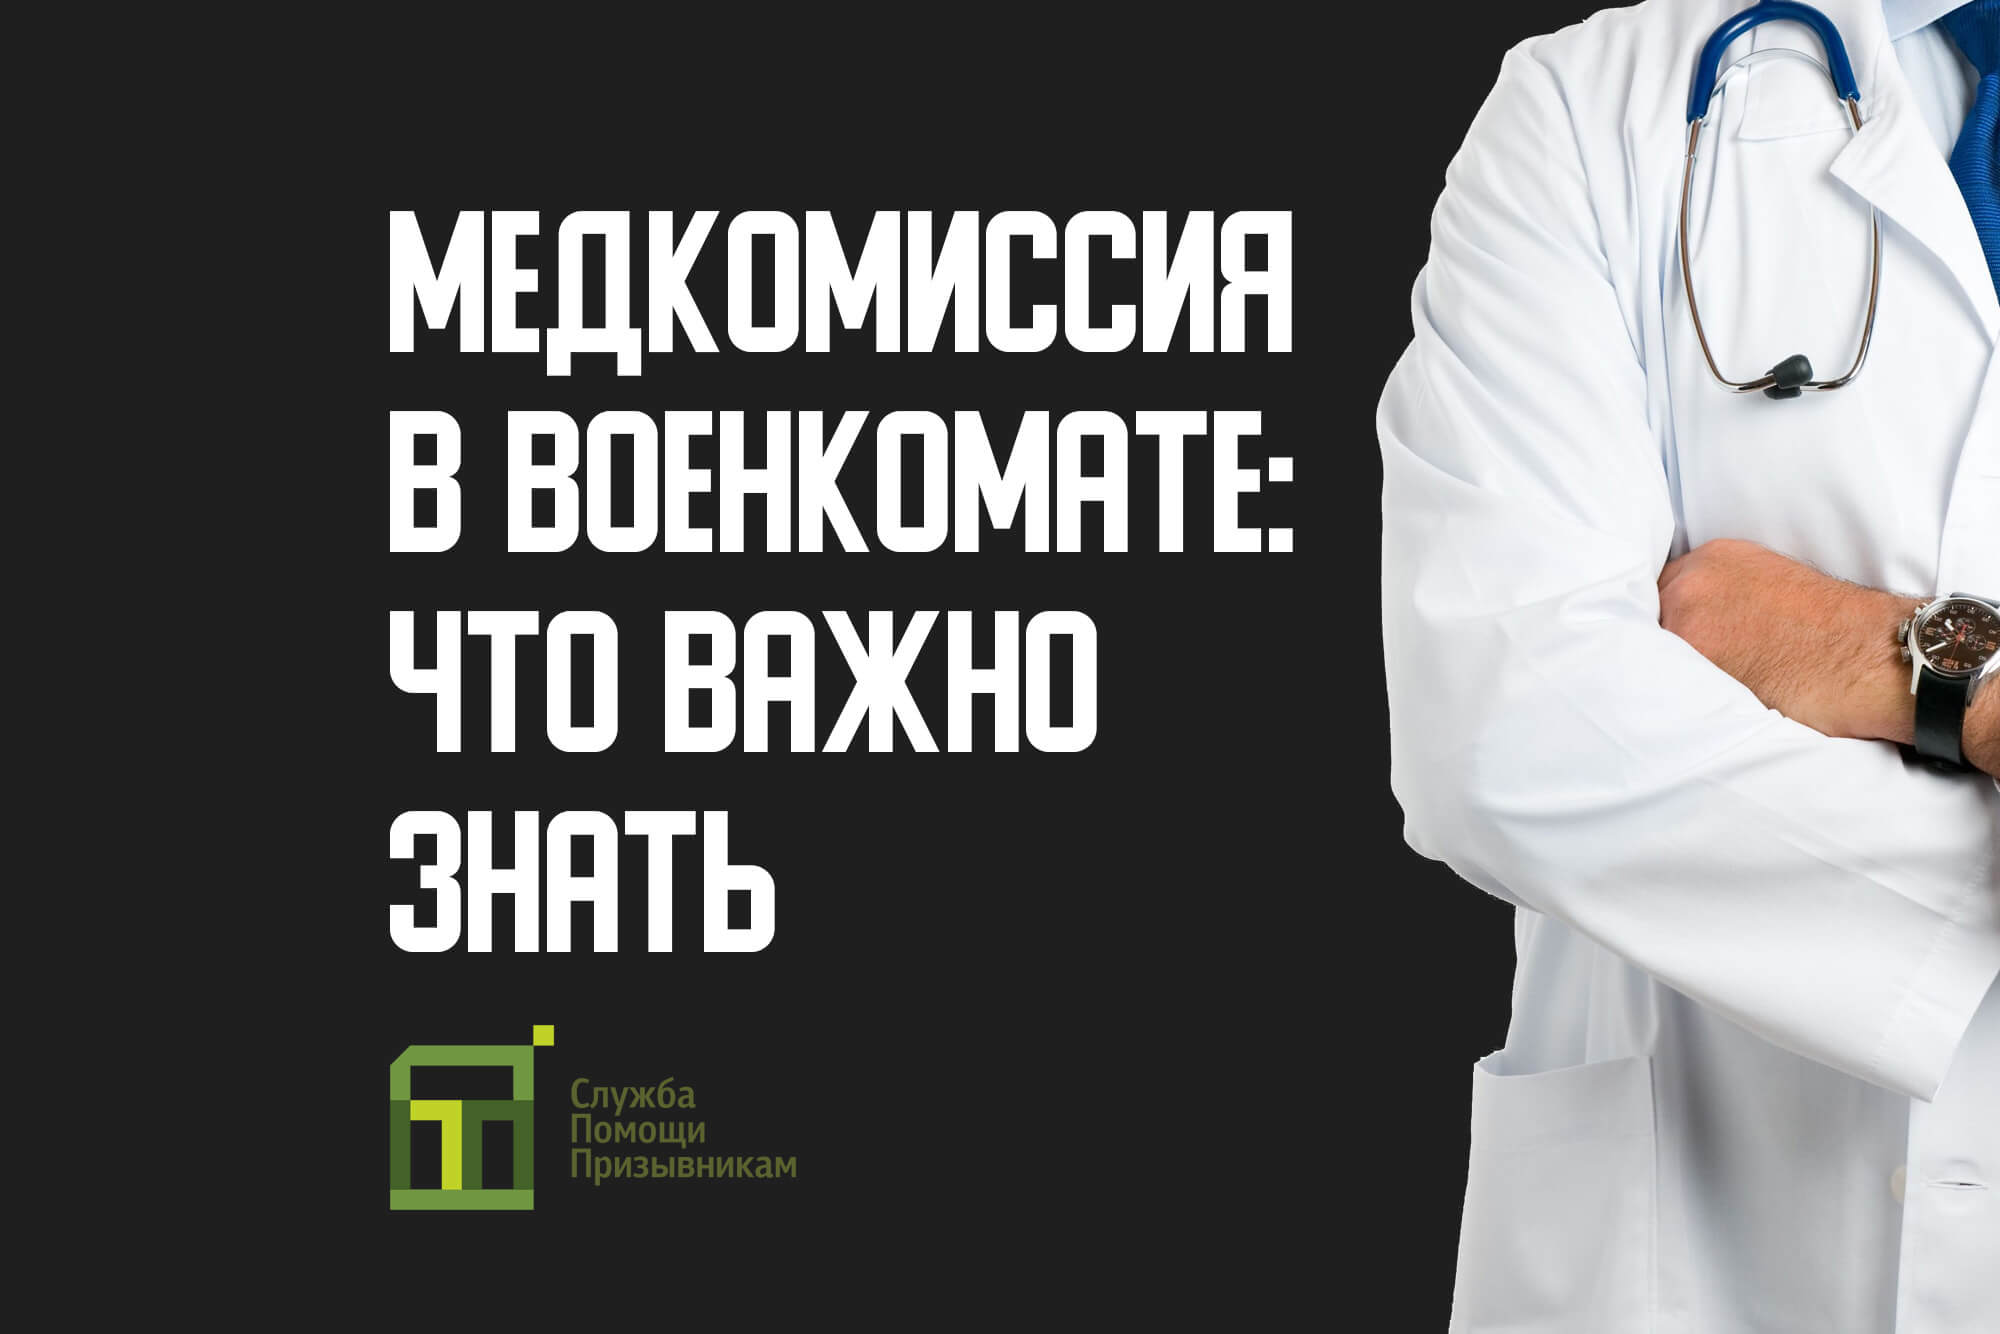 Почему пройти медкомиссию платно стоит в нашем медицинском центре «Доктор с вами» в Кожухово?